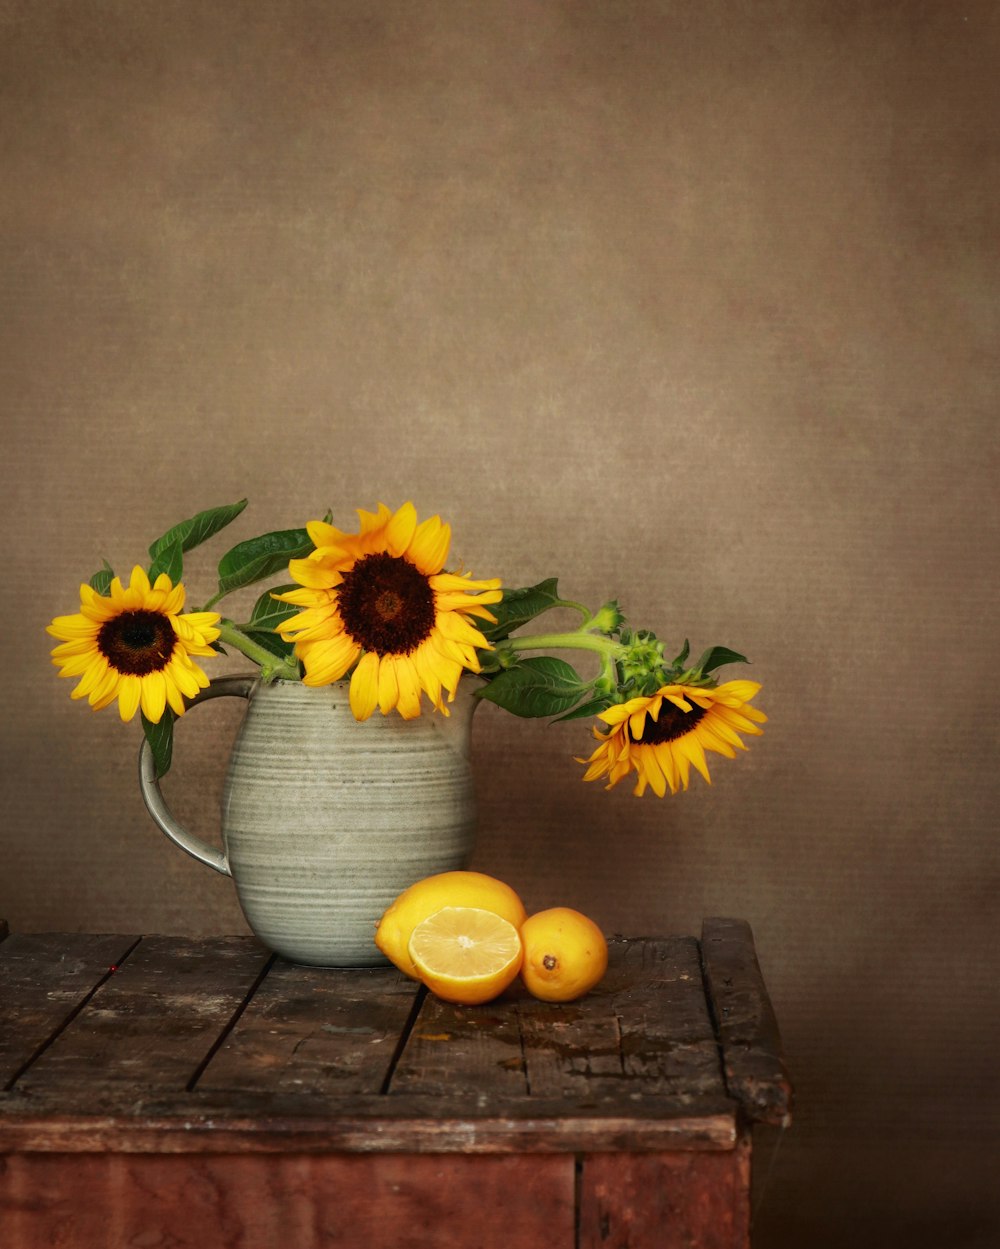 flor amarela e branca no vaso de cerâmica azul